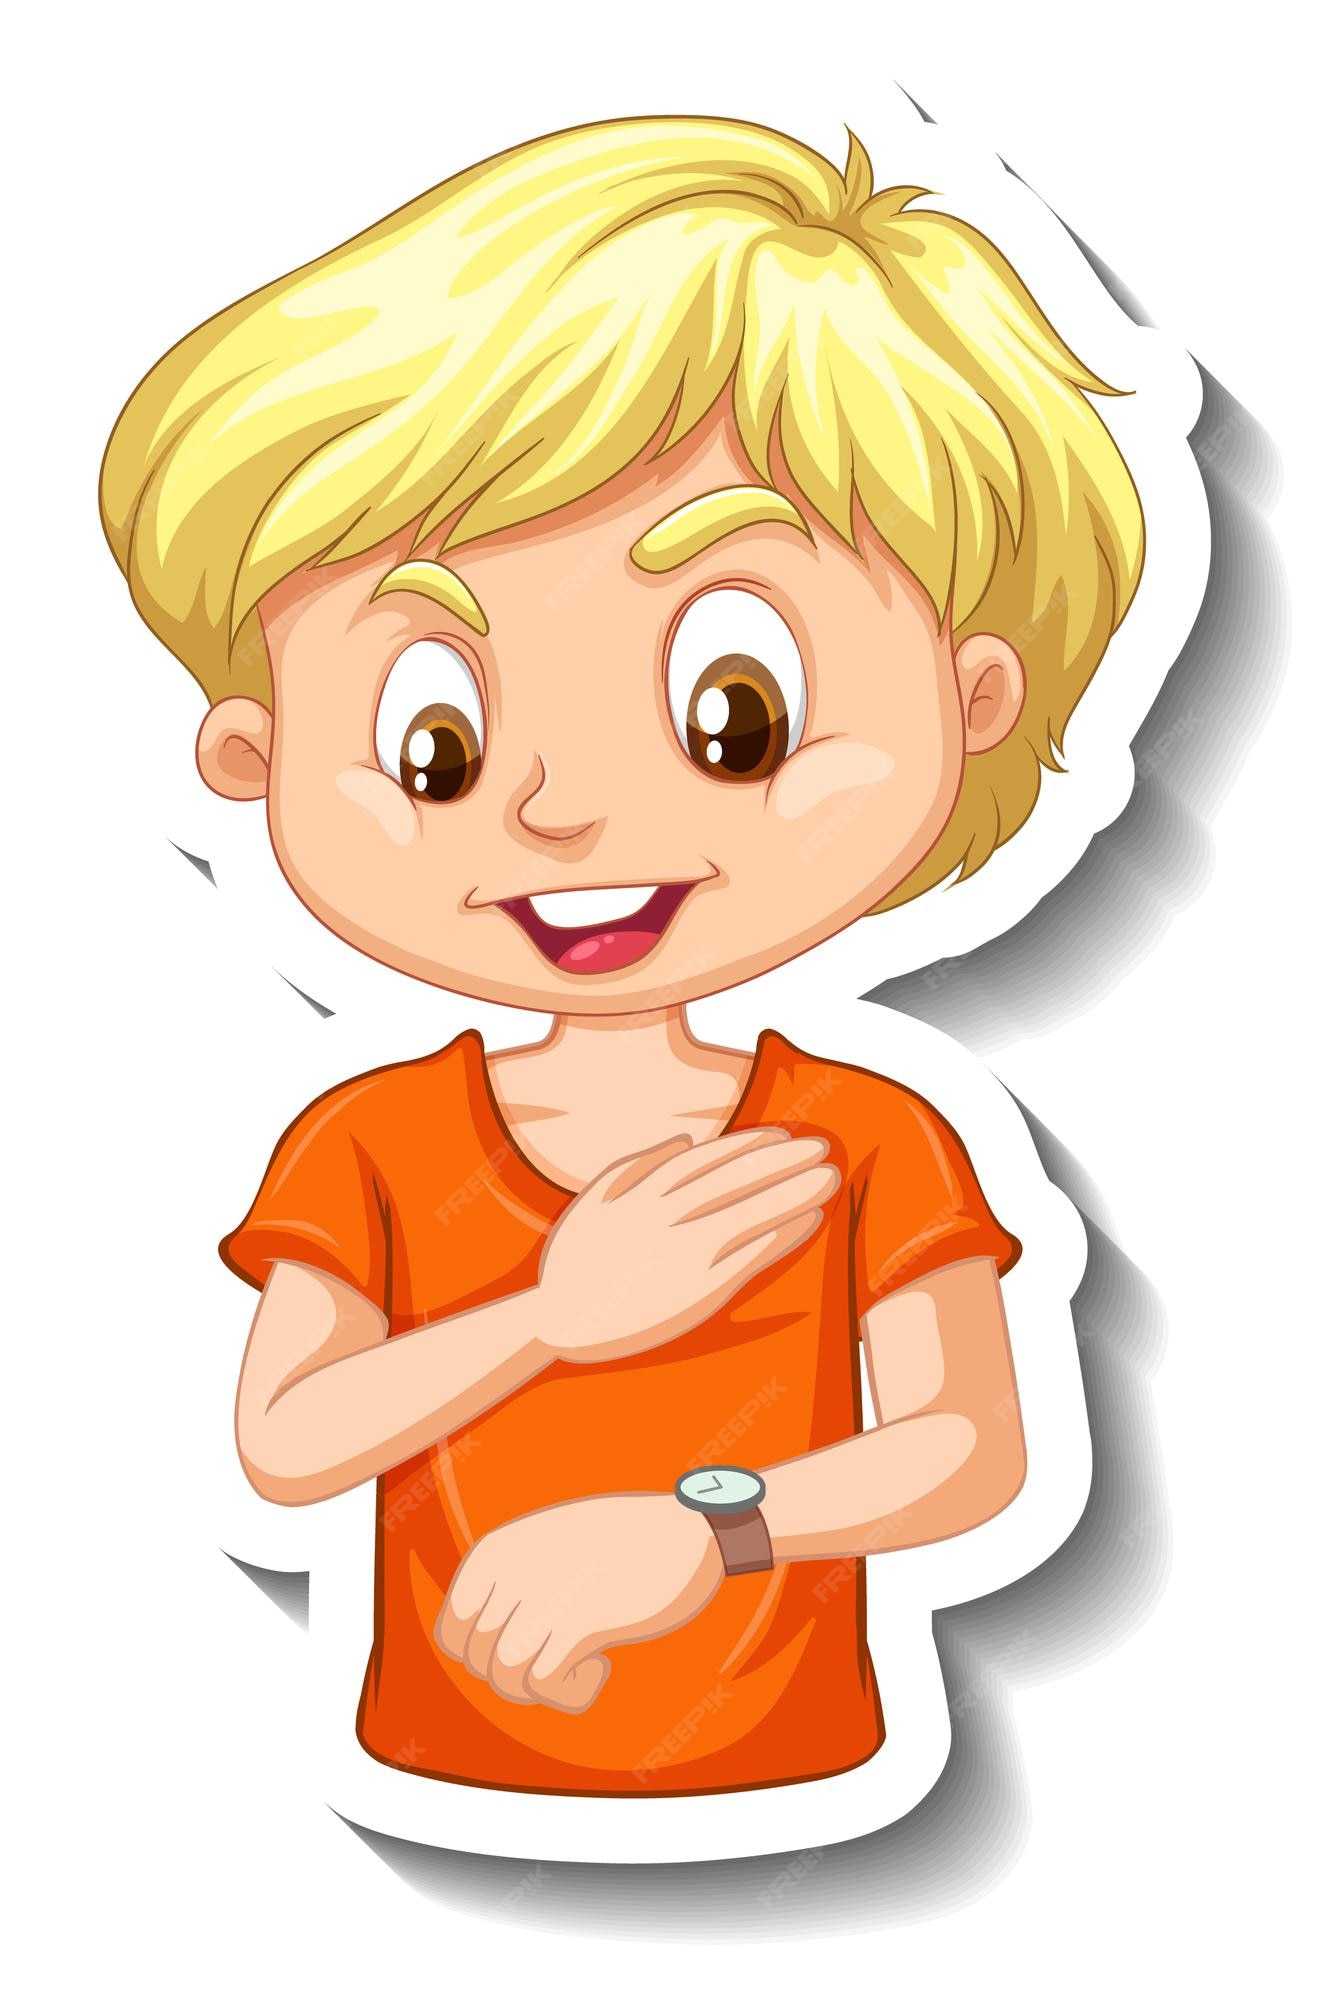 Blonde Boy Cartoon Images - Free Download on Freepik